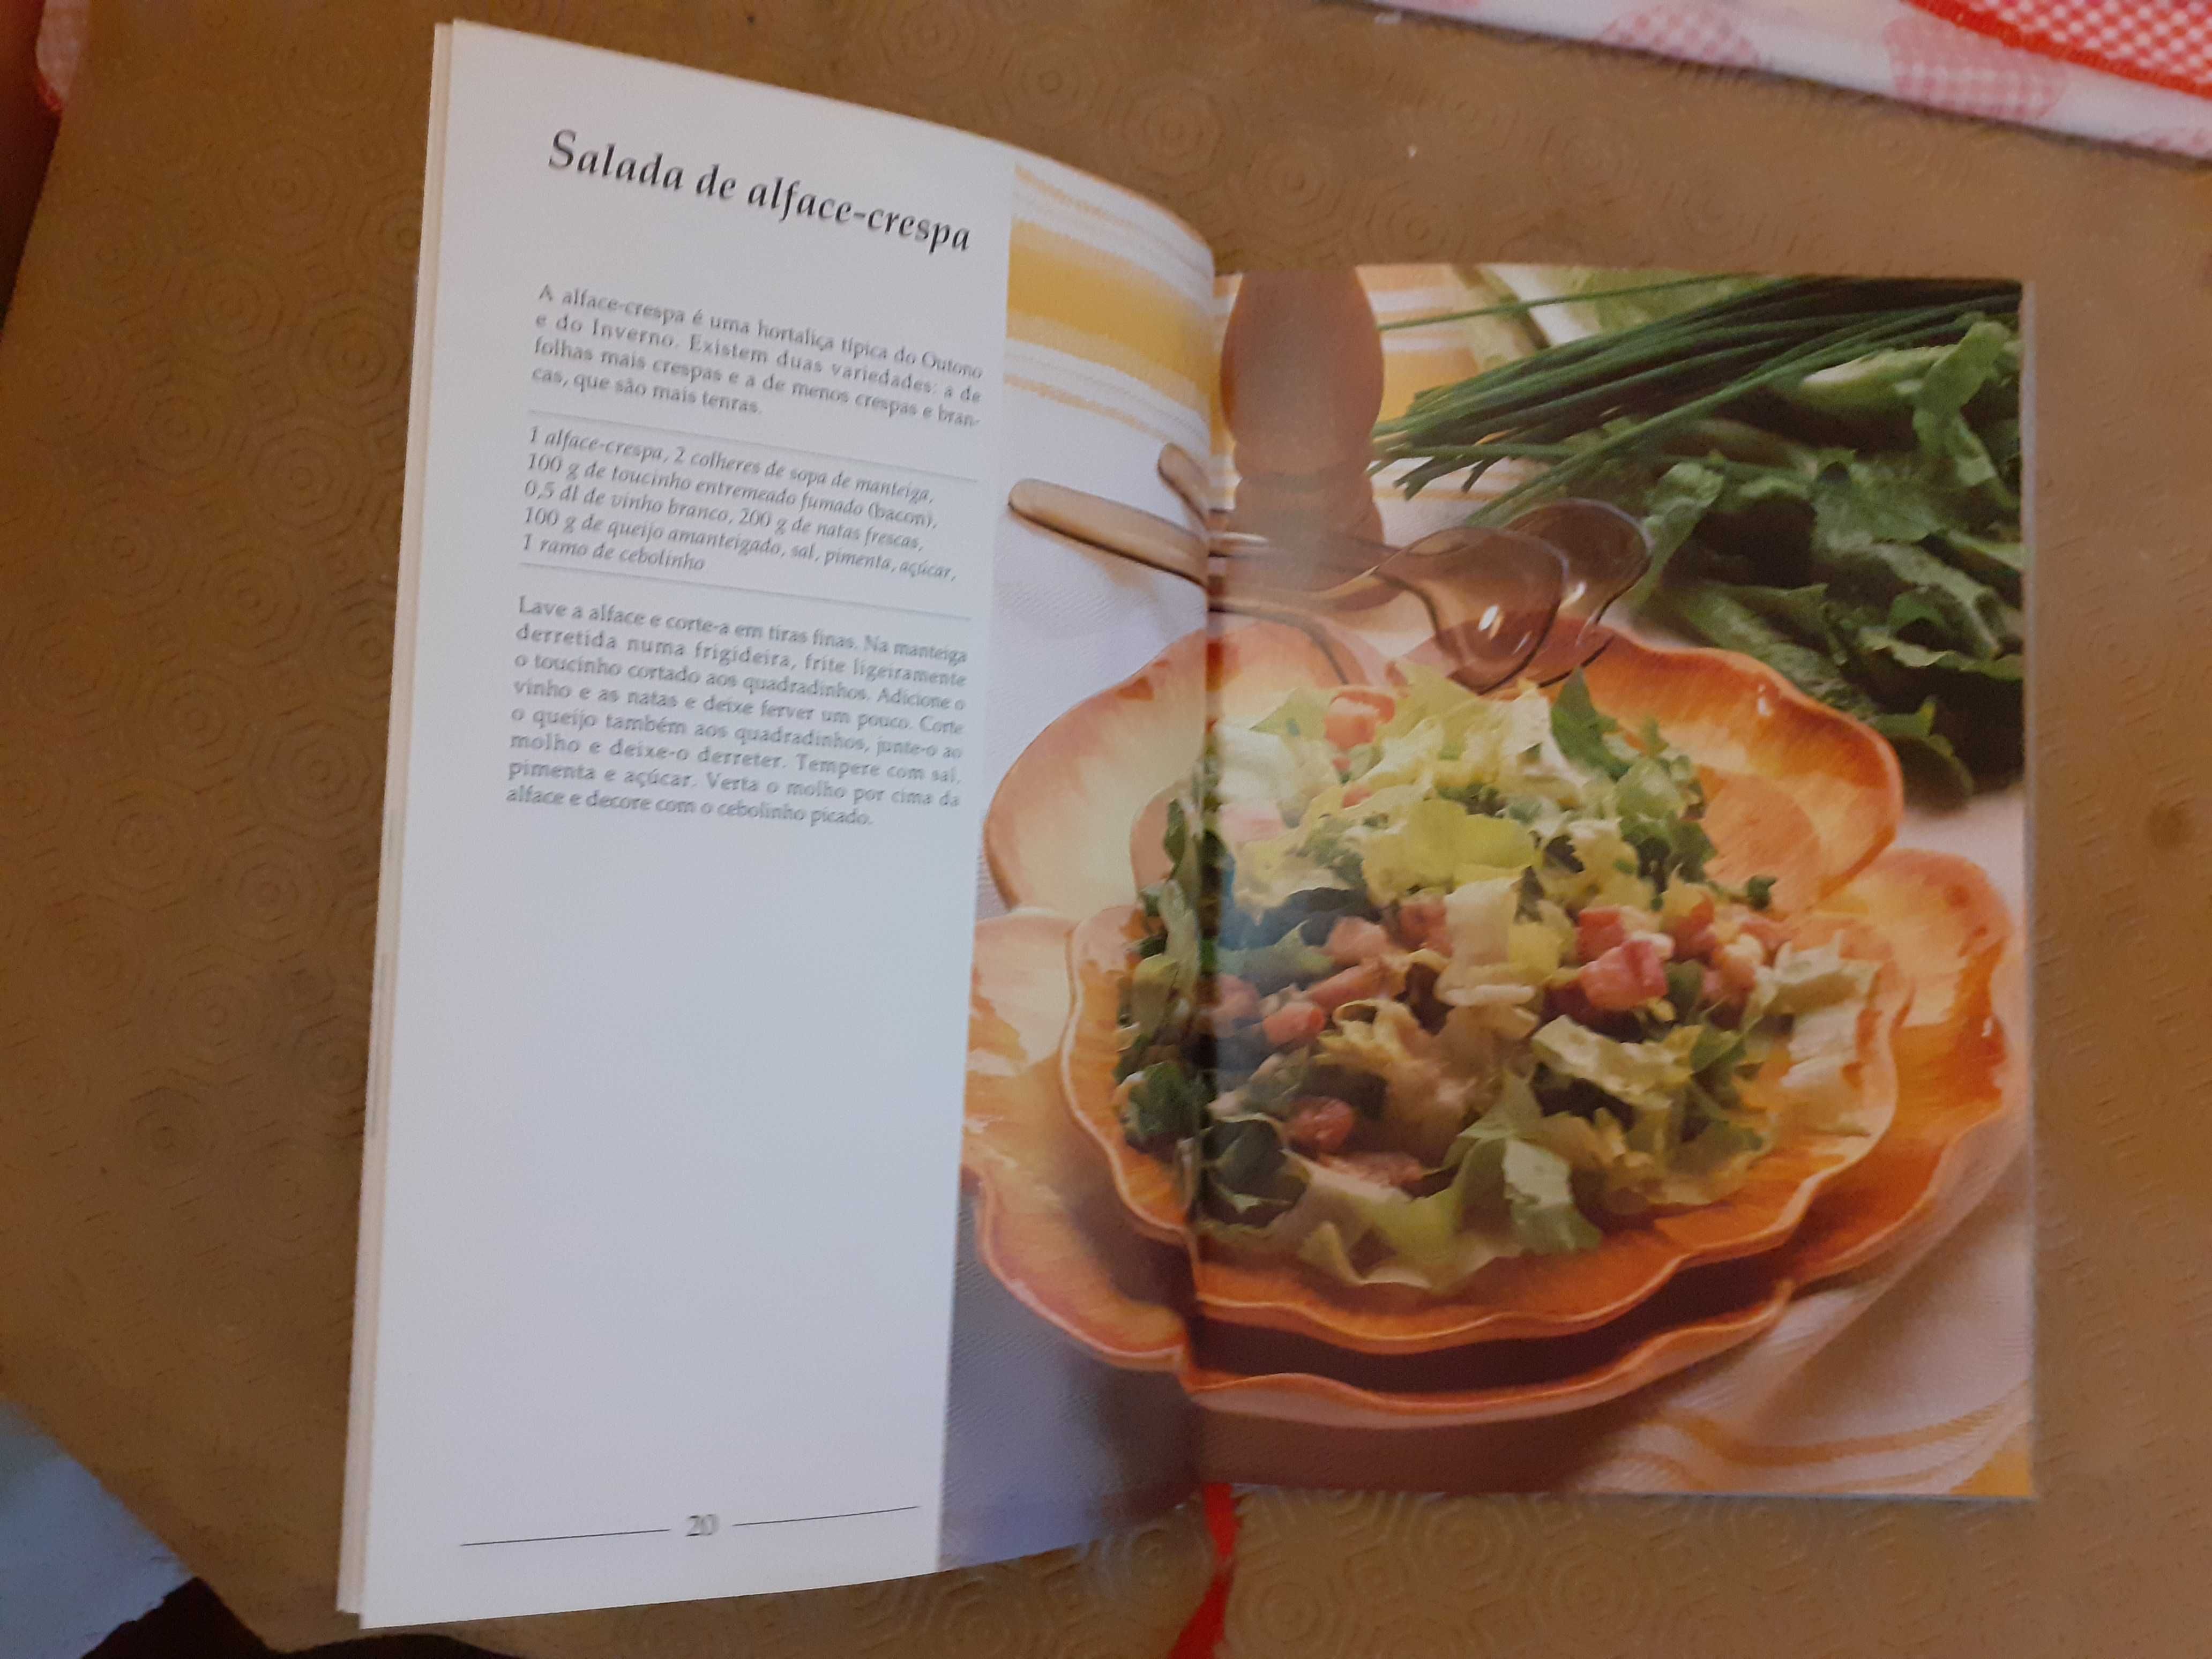 Um  Mundo de Sabores - Saladas - Reader's Digest